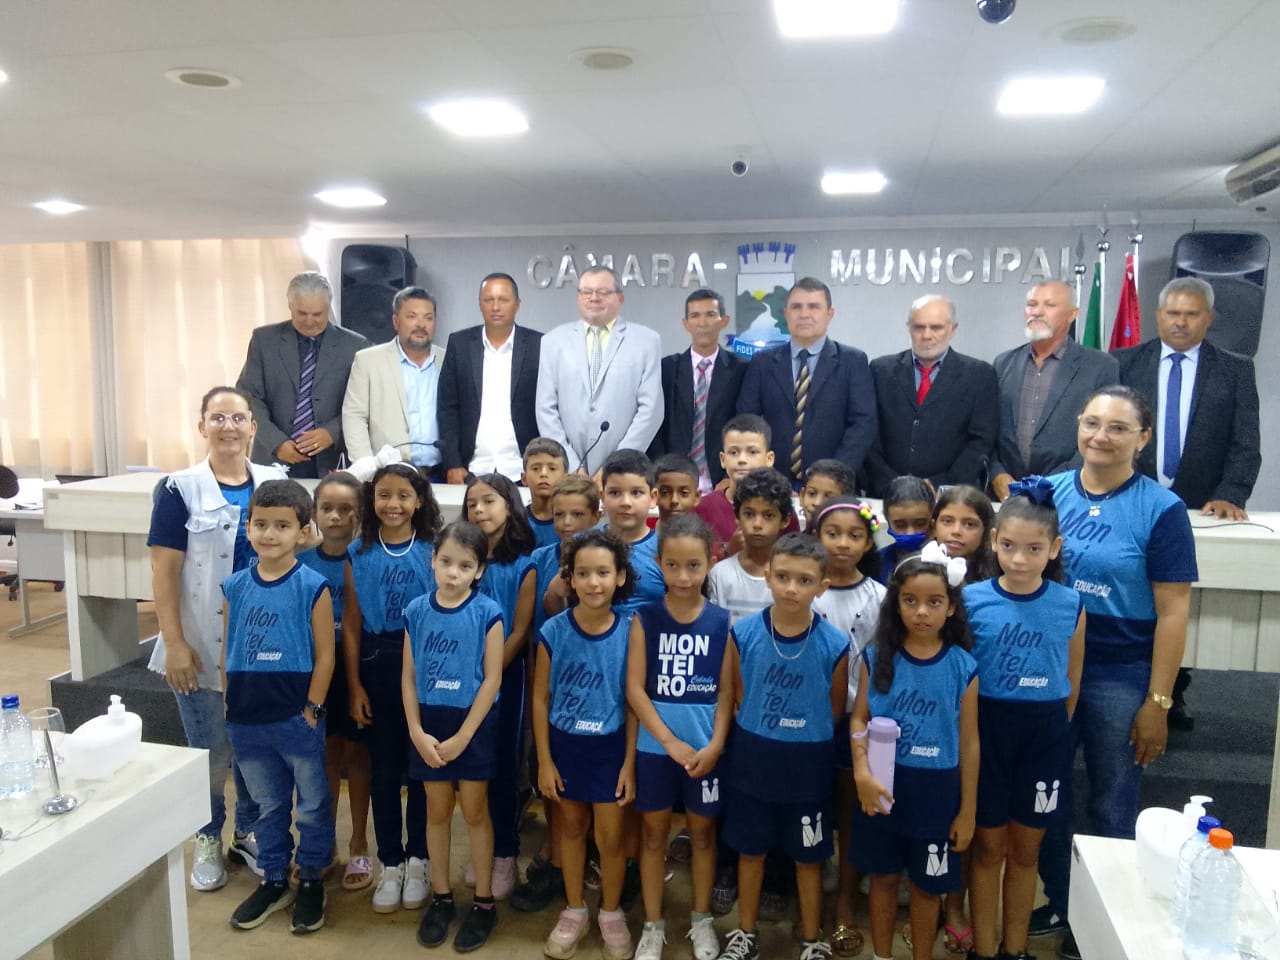 Alunos da Escola Municipal Santa Filomena realizam visita para conhecer a Câmara de Monteiro